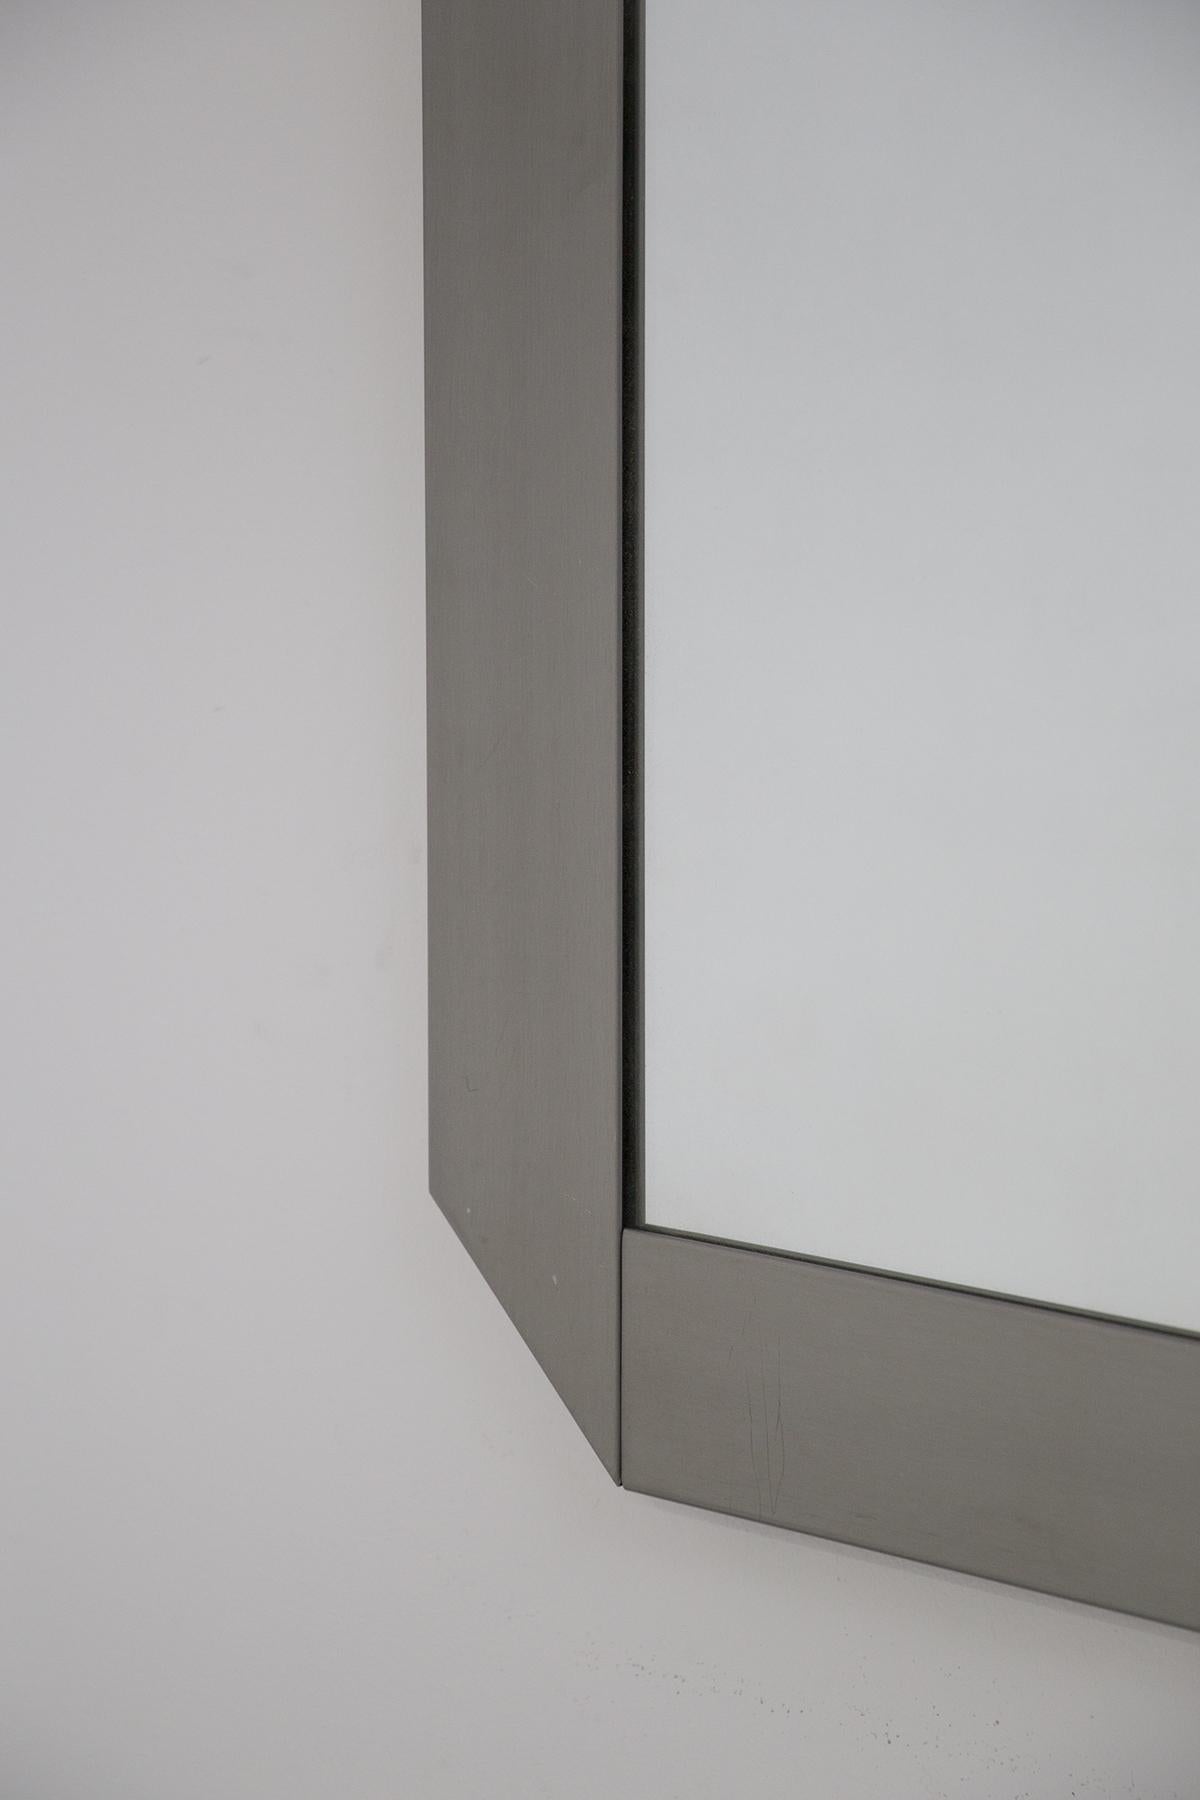 Magnifique miroir carré réalisé par Vittorio Introini et Valenti pour la Résidence Vips dans les années 70.
Le miroir possède un cadre en bois gris, de forme carrée et biseauté aux angles, créant un effet très fin et élégant.
Le miroir est un miroir